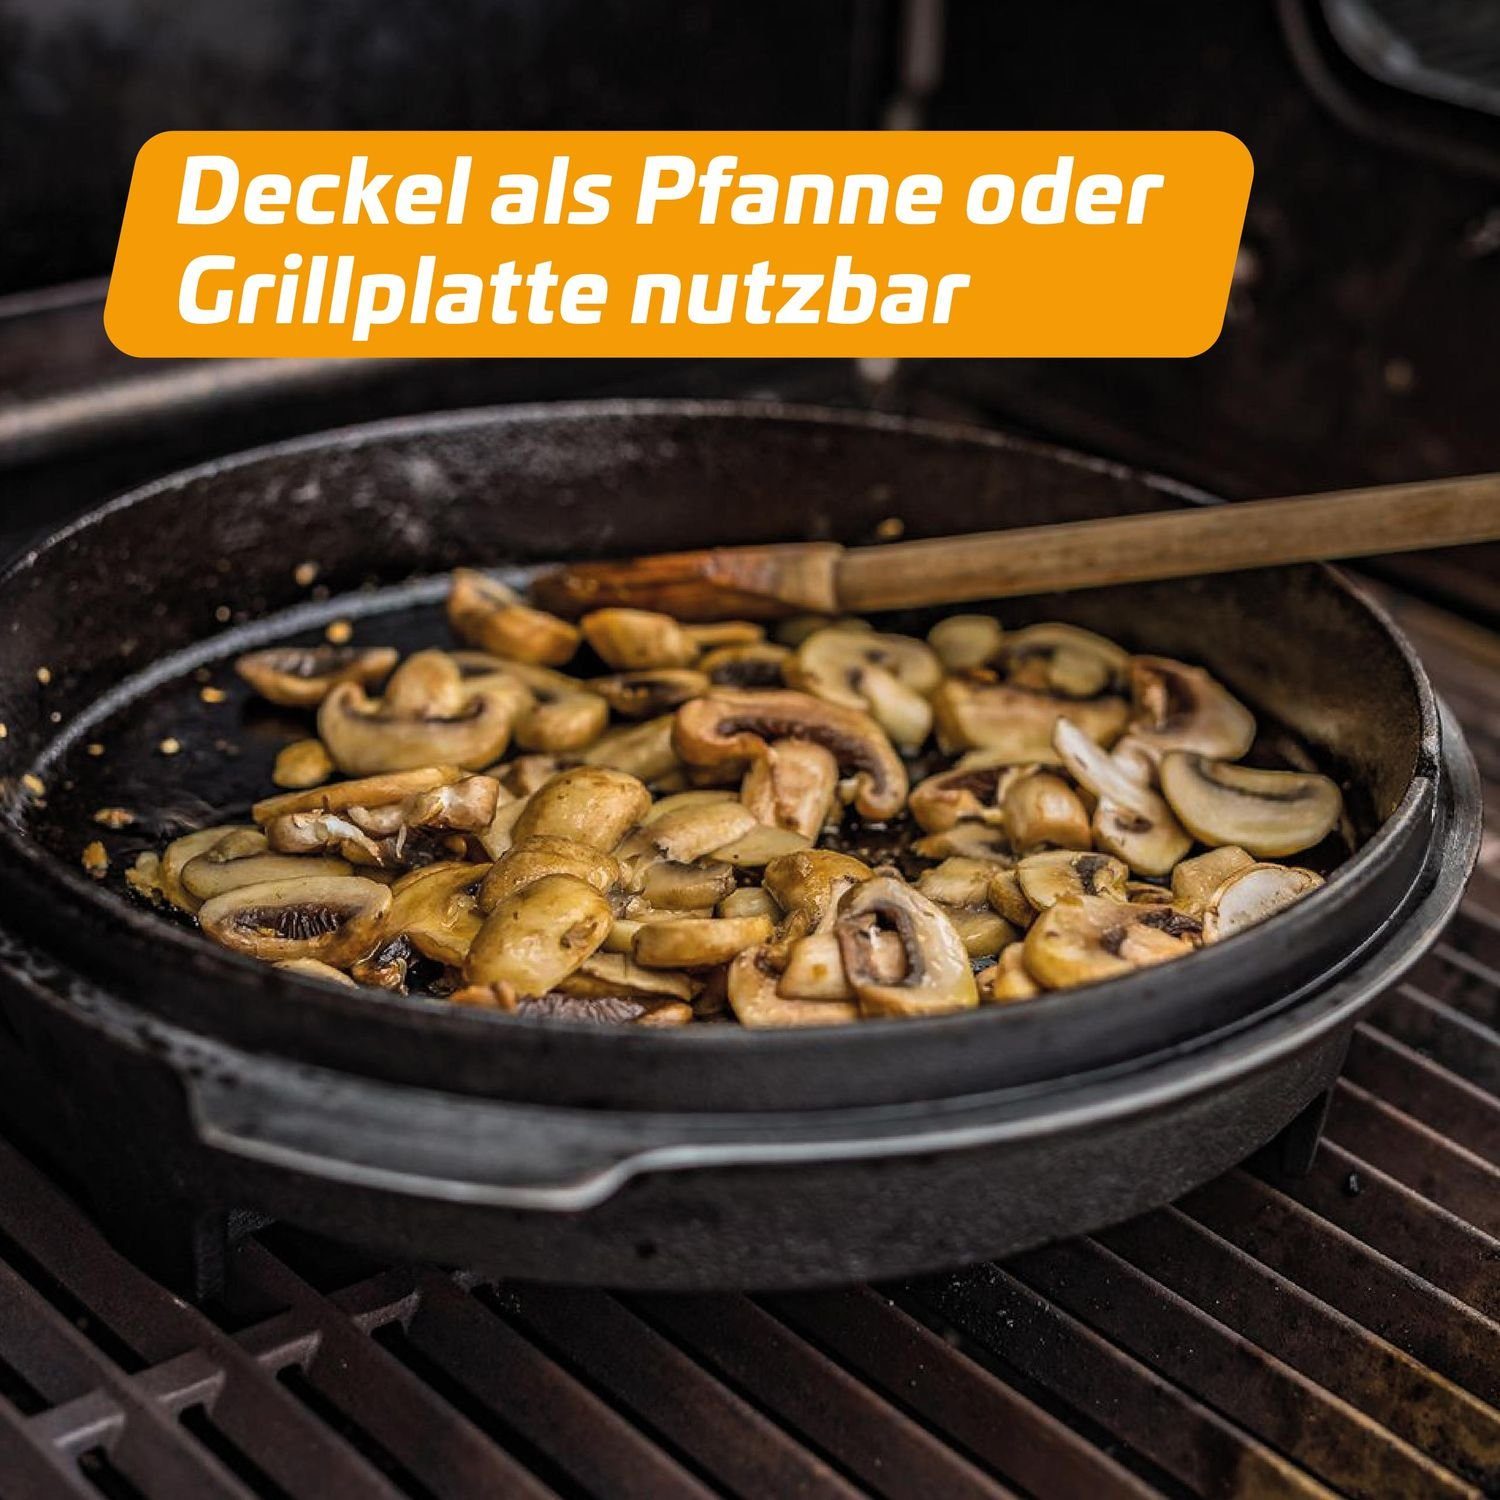 DO6 Klaus Grillfürst - Grillfürst Bratentopf Sonderedition Dutch Edition BBQ Oven Grillt